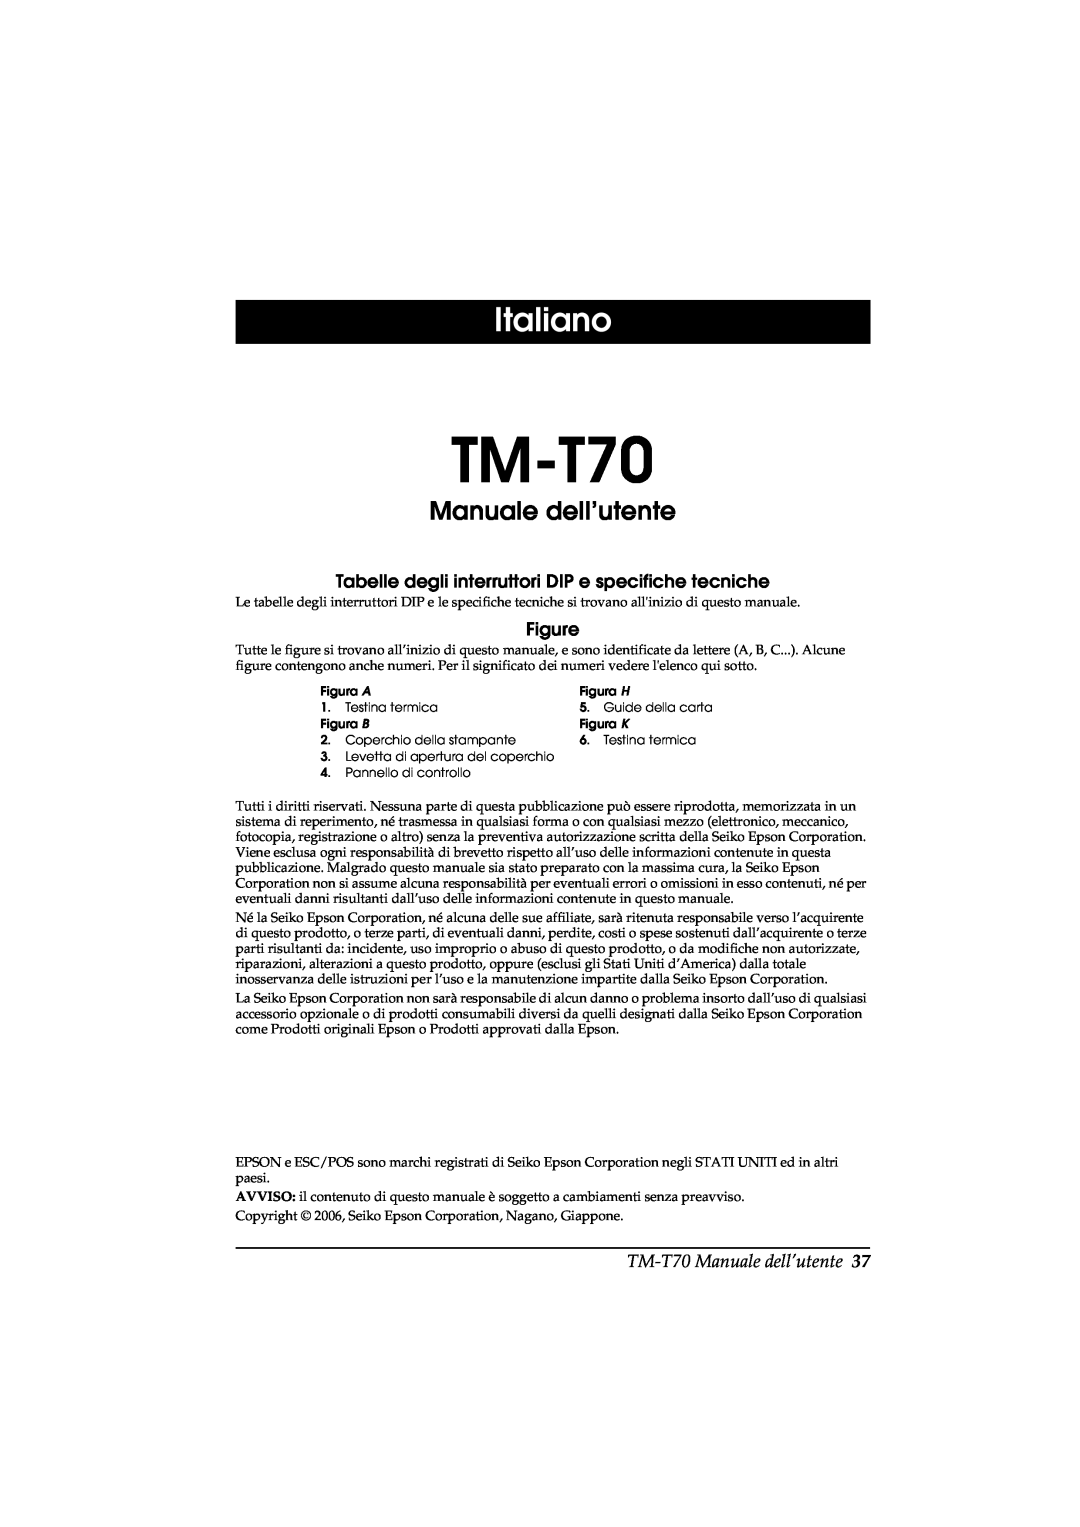 Seiko Group TM-T70 user manual Italiano, Manuale dell’utente, Tabelle degli interruttori DIP e specifiche tecniche 